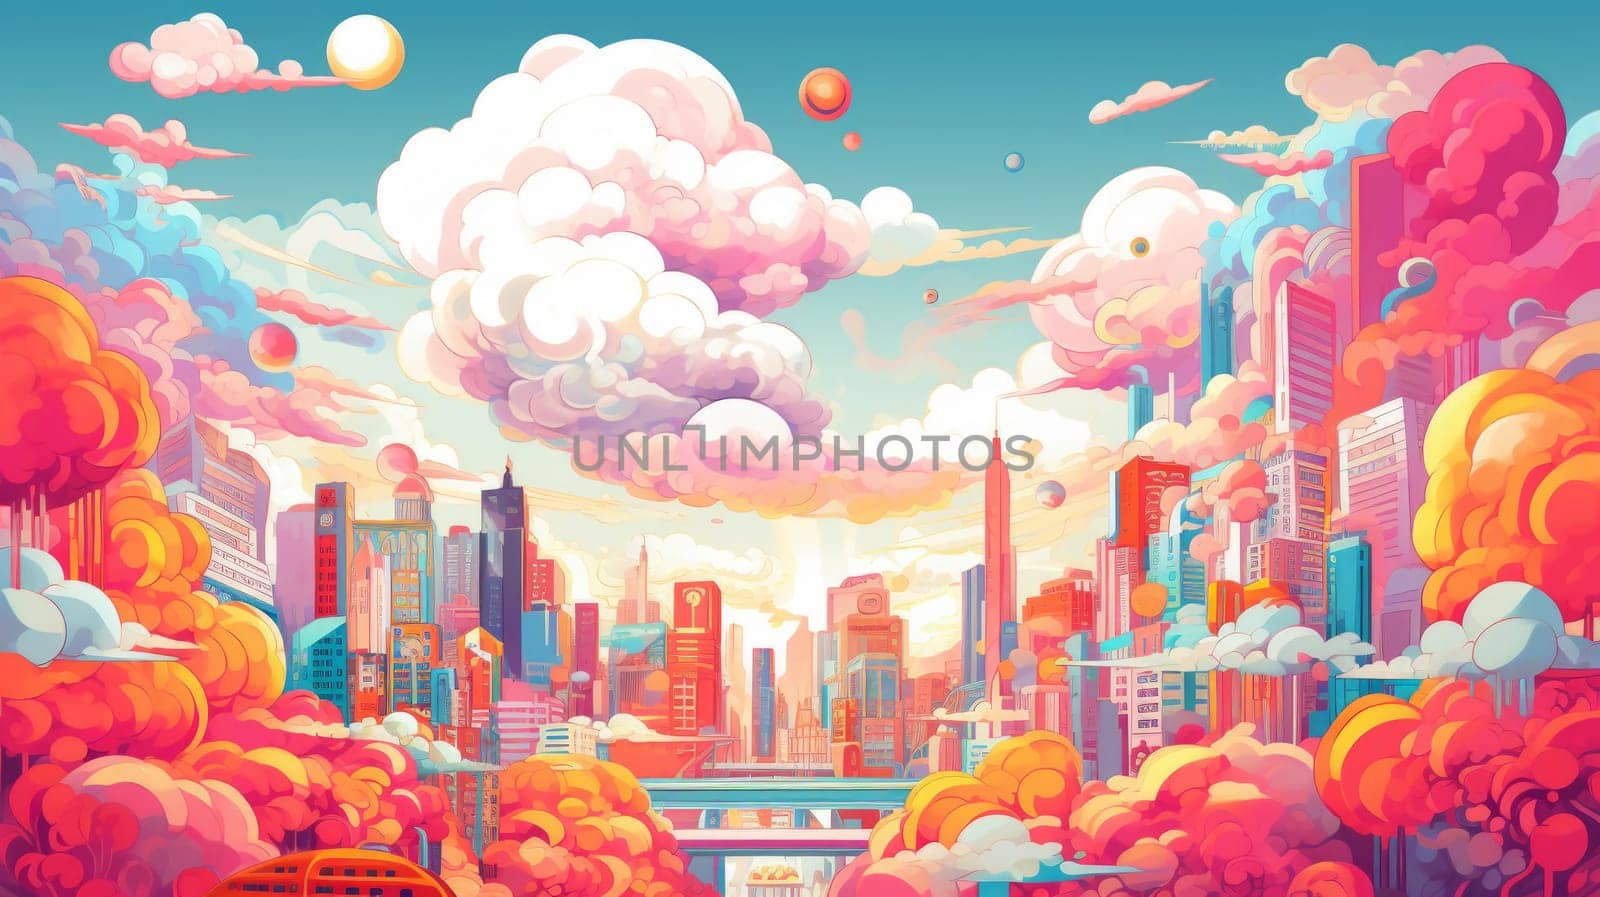 Surreal Urban Fantasy in Pastel Tones by ugguggu